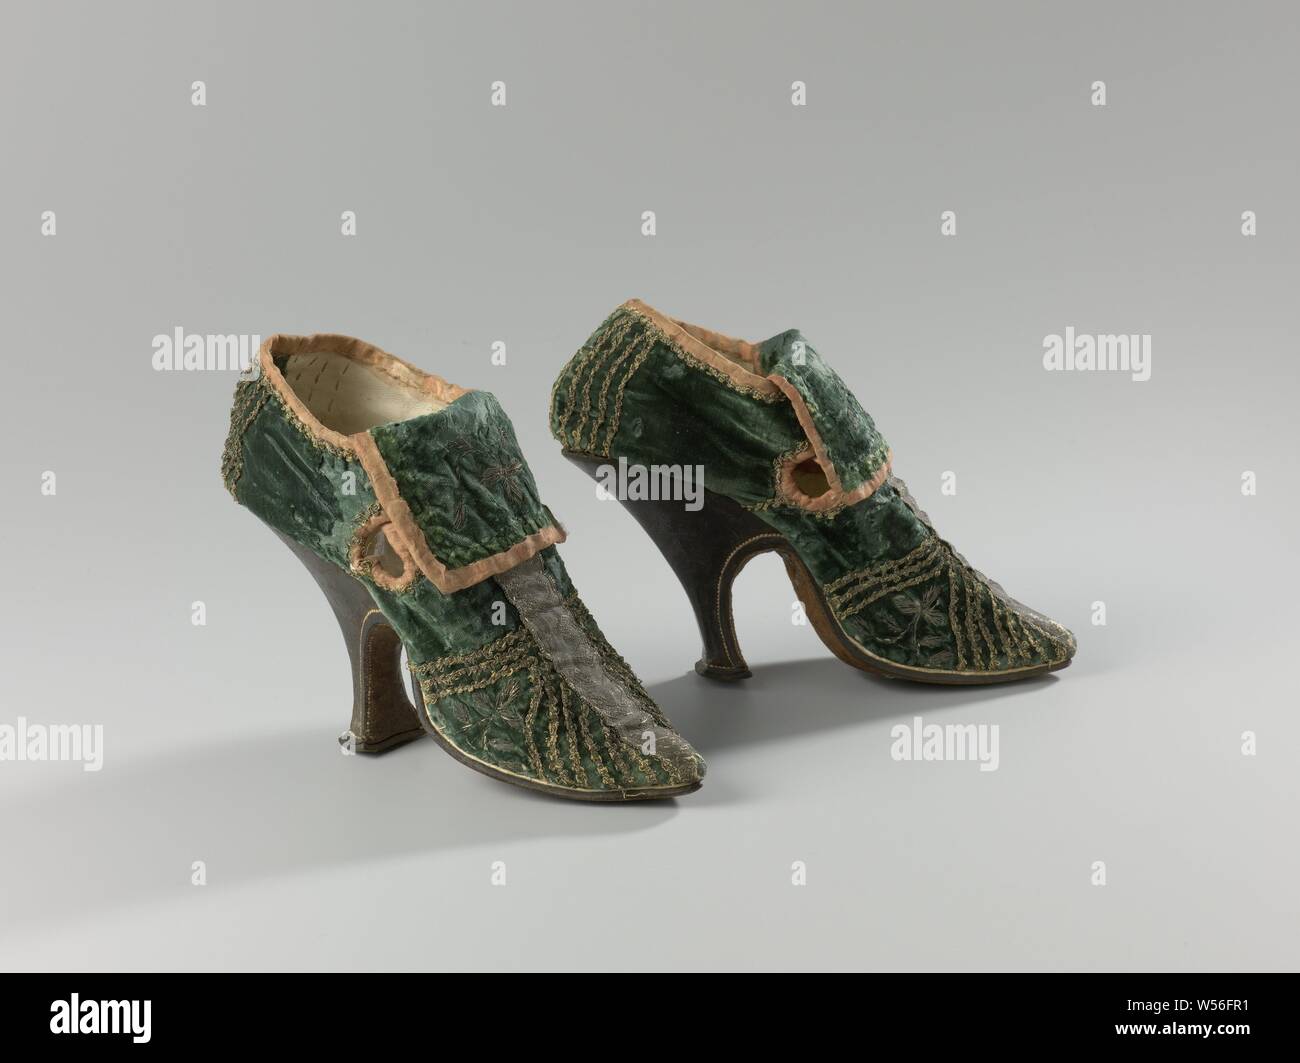 Coppia di High-Heeled Scarpe Donna Coppia di donna scarpe con i tacchi alti  velluto verde la scarpa da donna decorata con verticale e diagonale  rivestimenti in argento, con alta sottile pelle tacco,